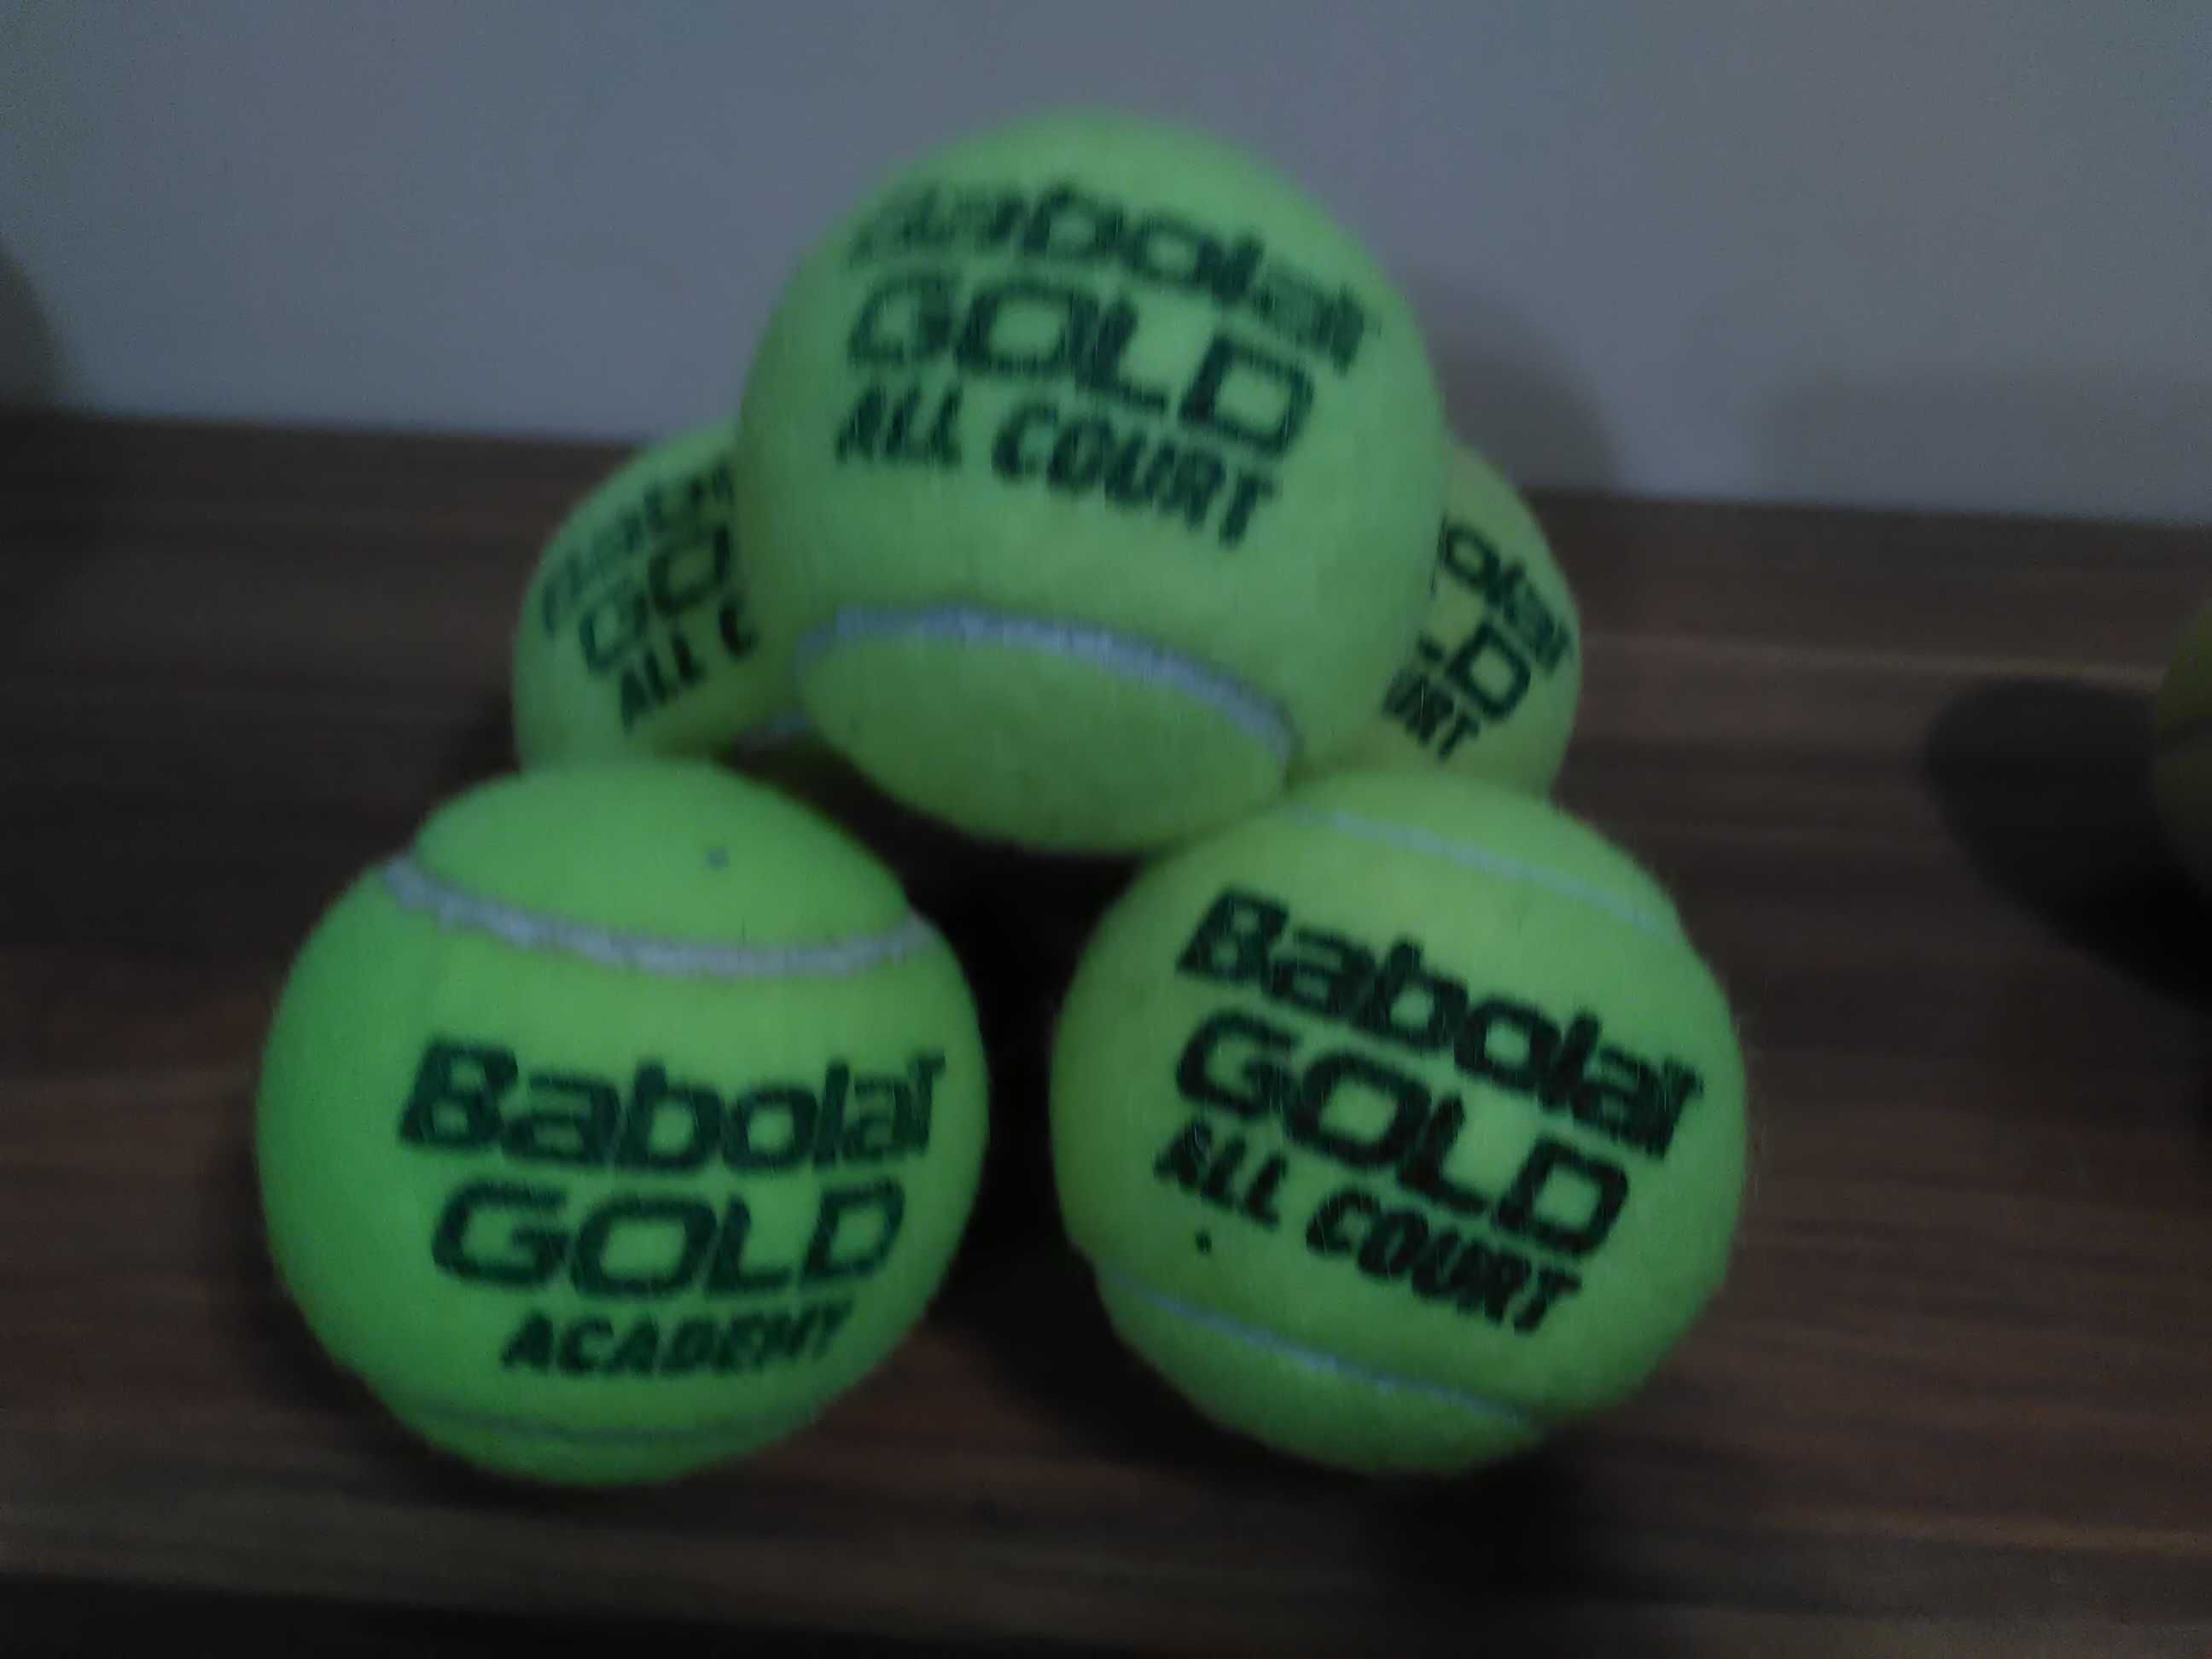 Мячі тенісні (пружні - для гри в теніс) 1 шт + ракетка великого тенісу